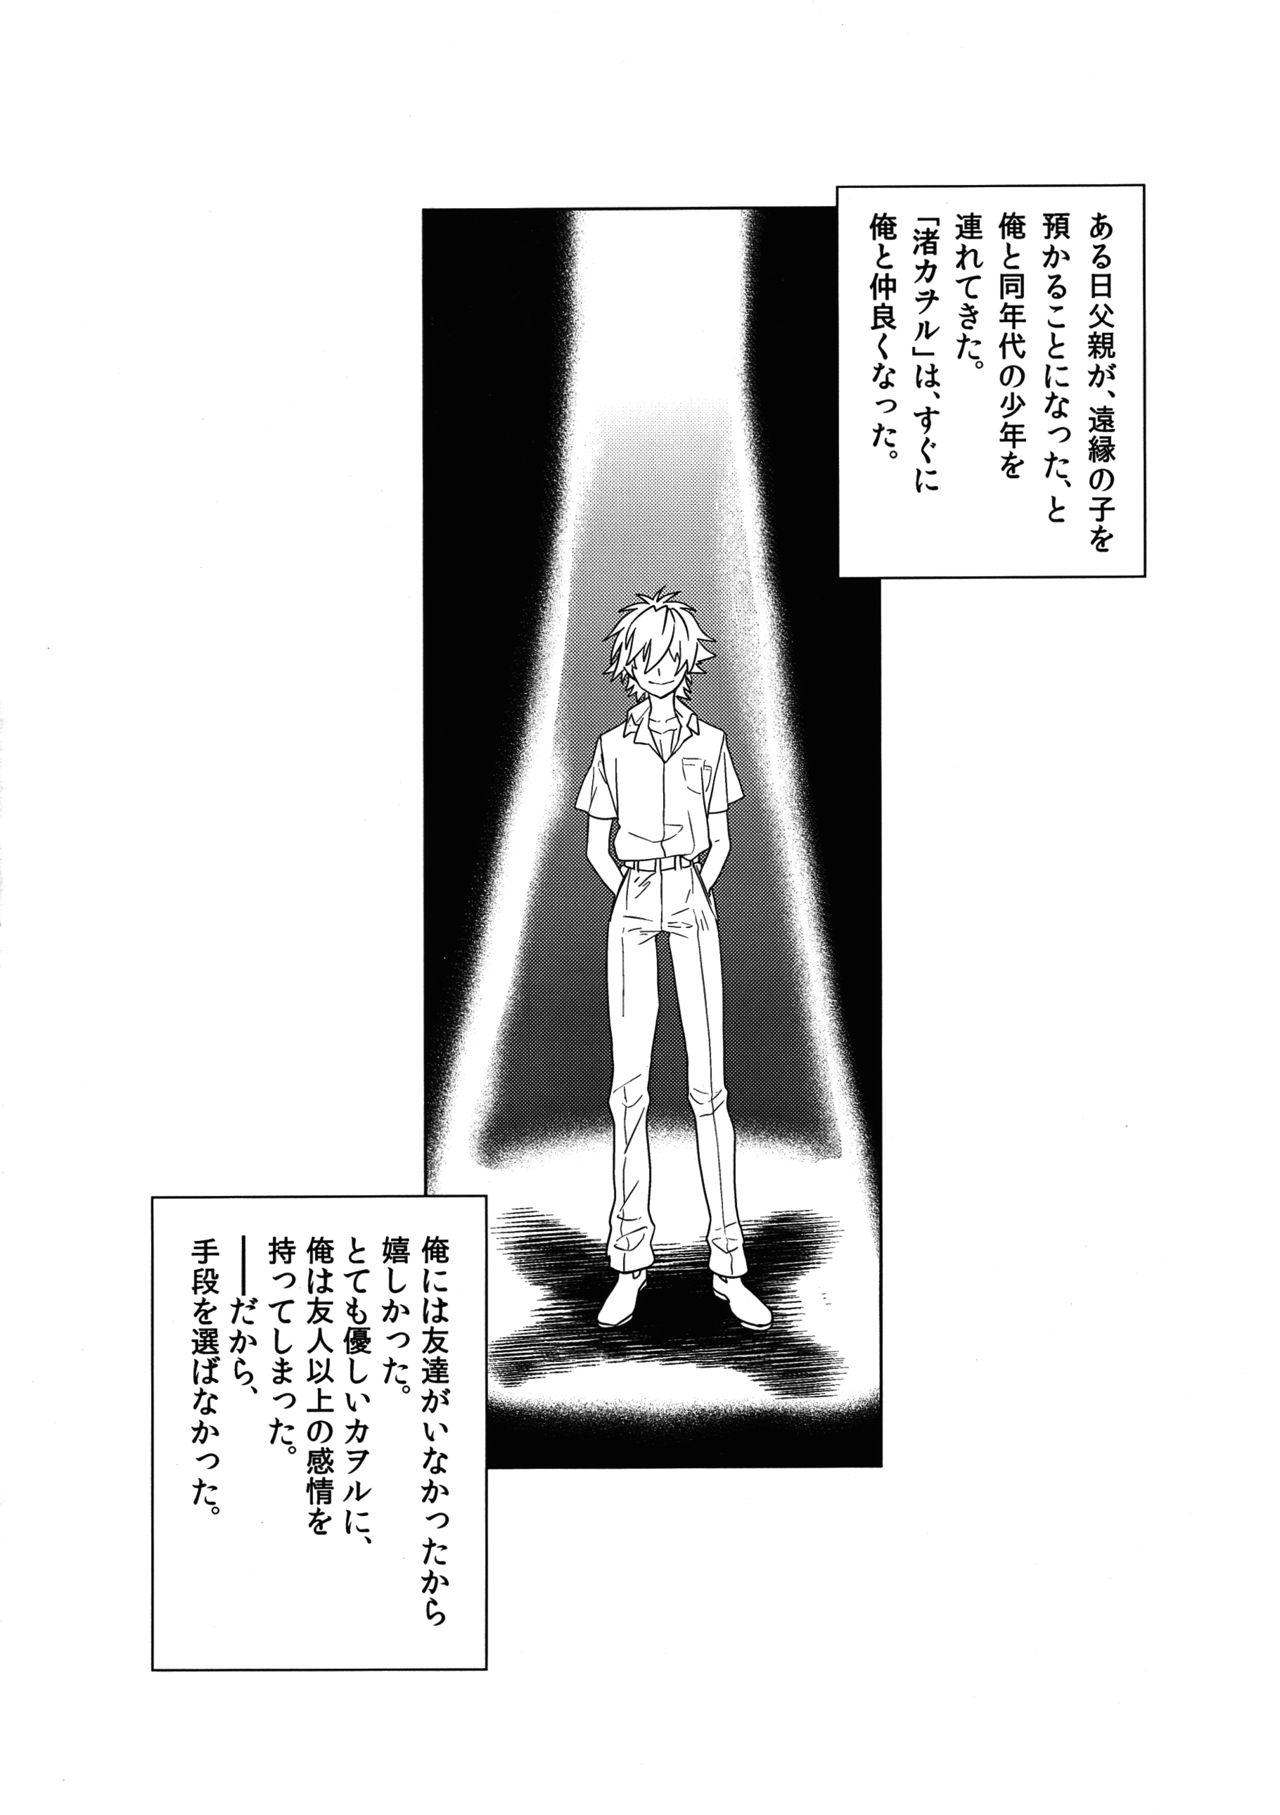 Abg Ore no Koto o Ikari Shinji da to Omoikomu Saimin ni Kakatta Nagisa Kaworu-kun wa Mechamecha Yasashii - Neon genesis evangelion Perra - Page 2